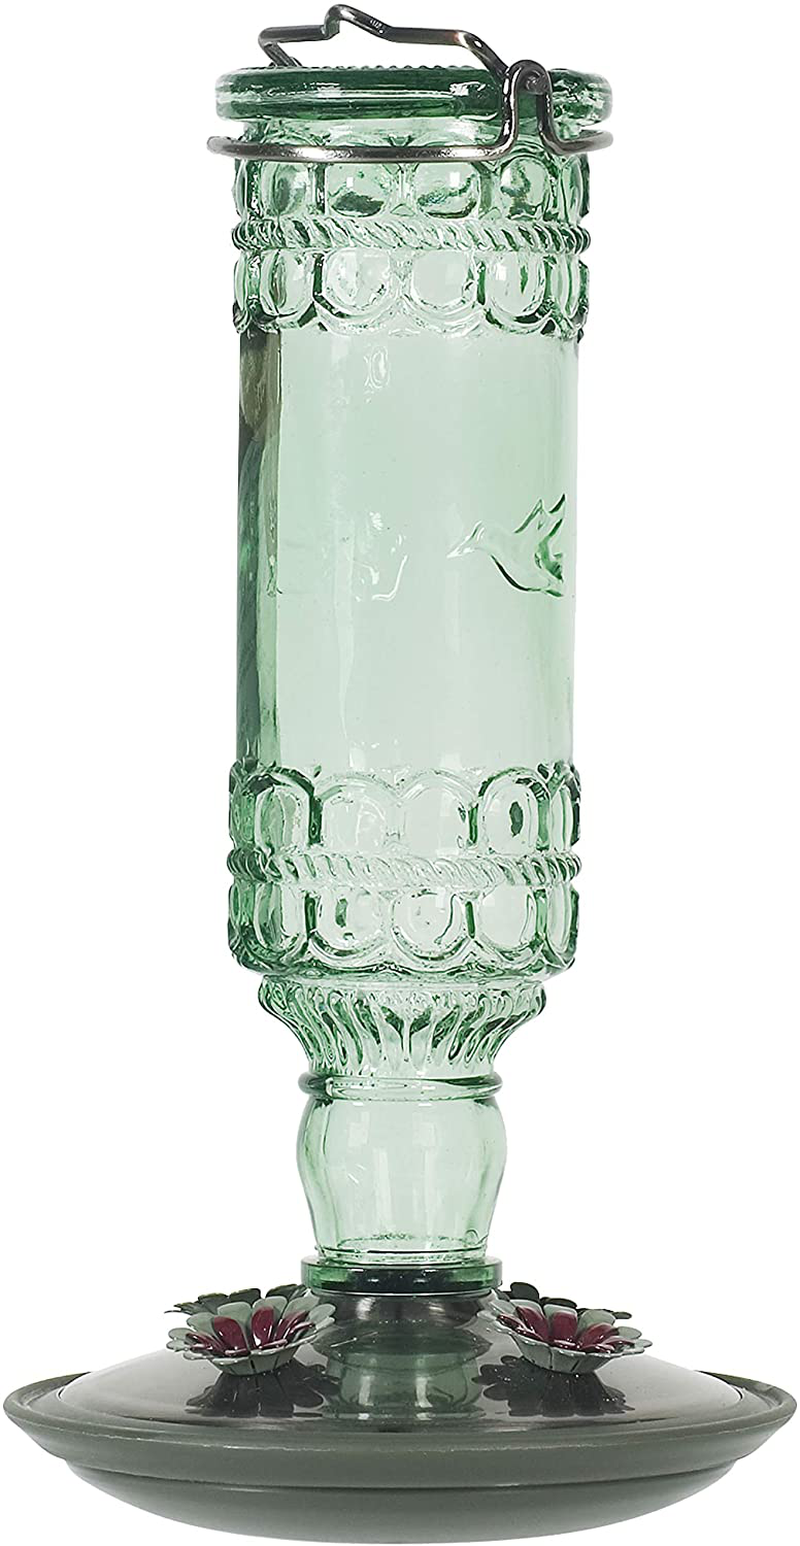 Perky-Pet 8108-2 Green Antique Bottle 10-Ounce Glass Hummingbird Feeder